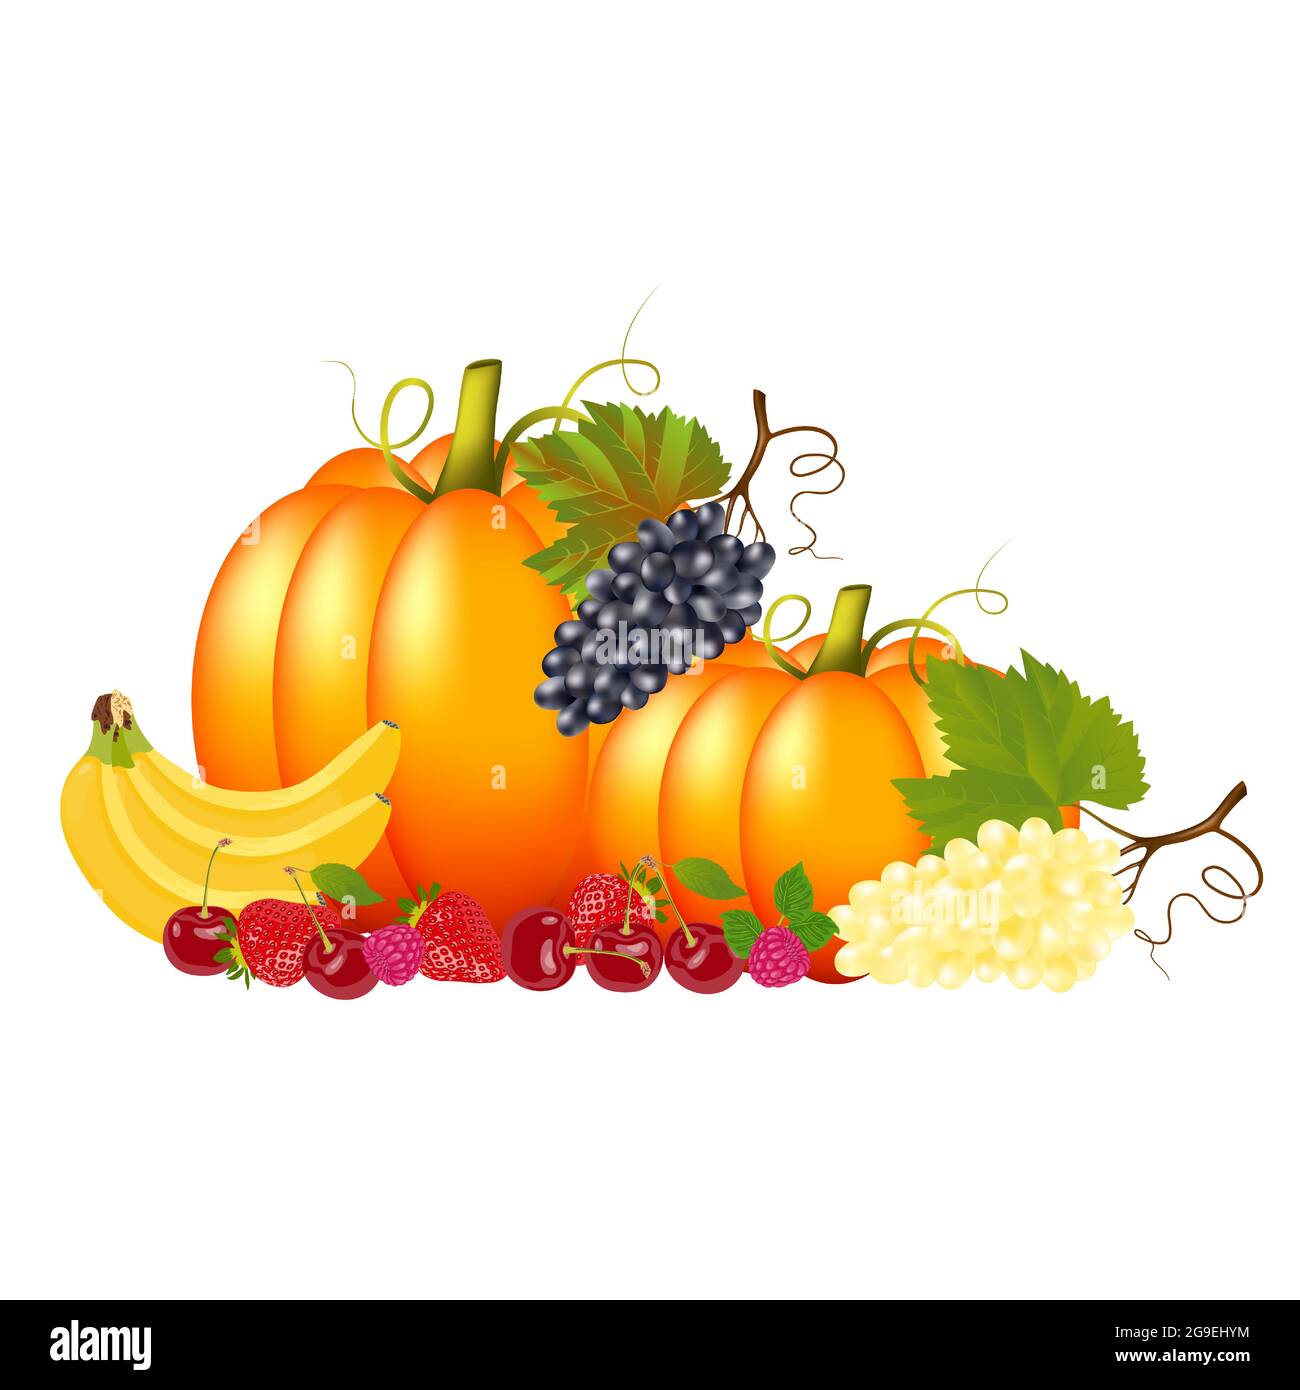 Splendide verdure mature e gustose, frutta e bacche su sfondo bianco. Illustrazione astratta, poster o sfondo con frutti luminosi e colorati Illustrazione Vettoriale